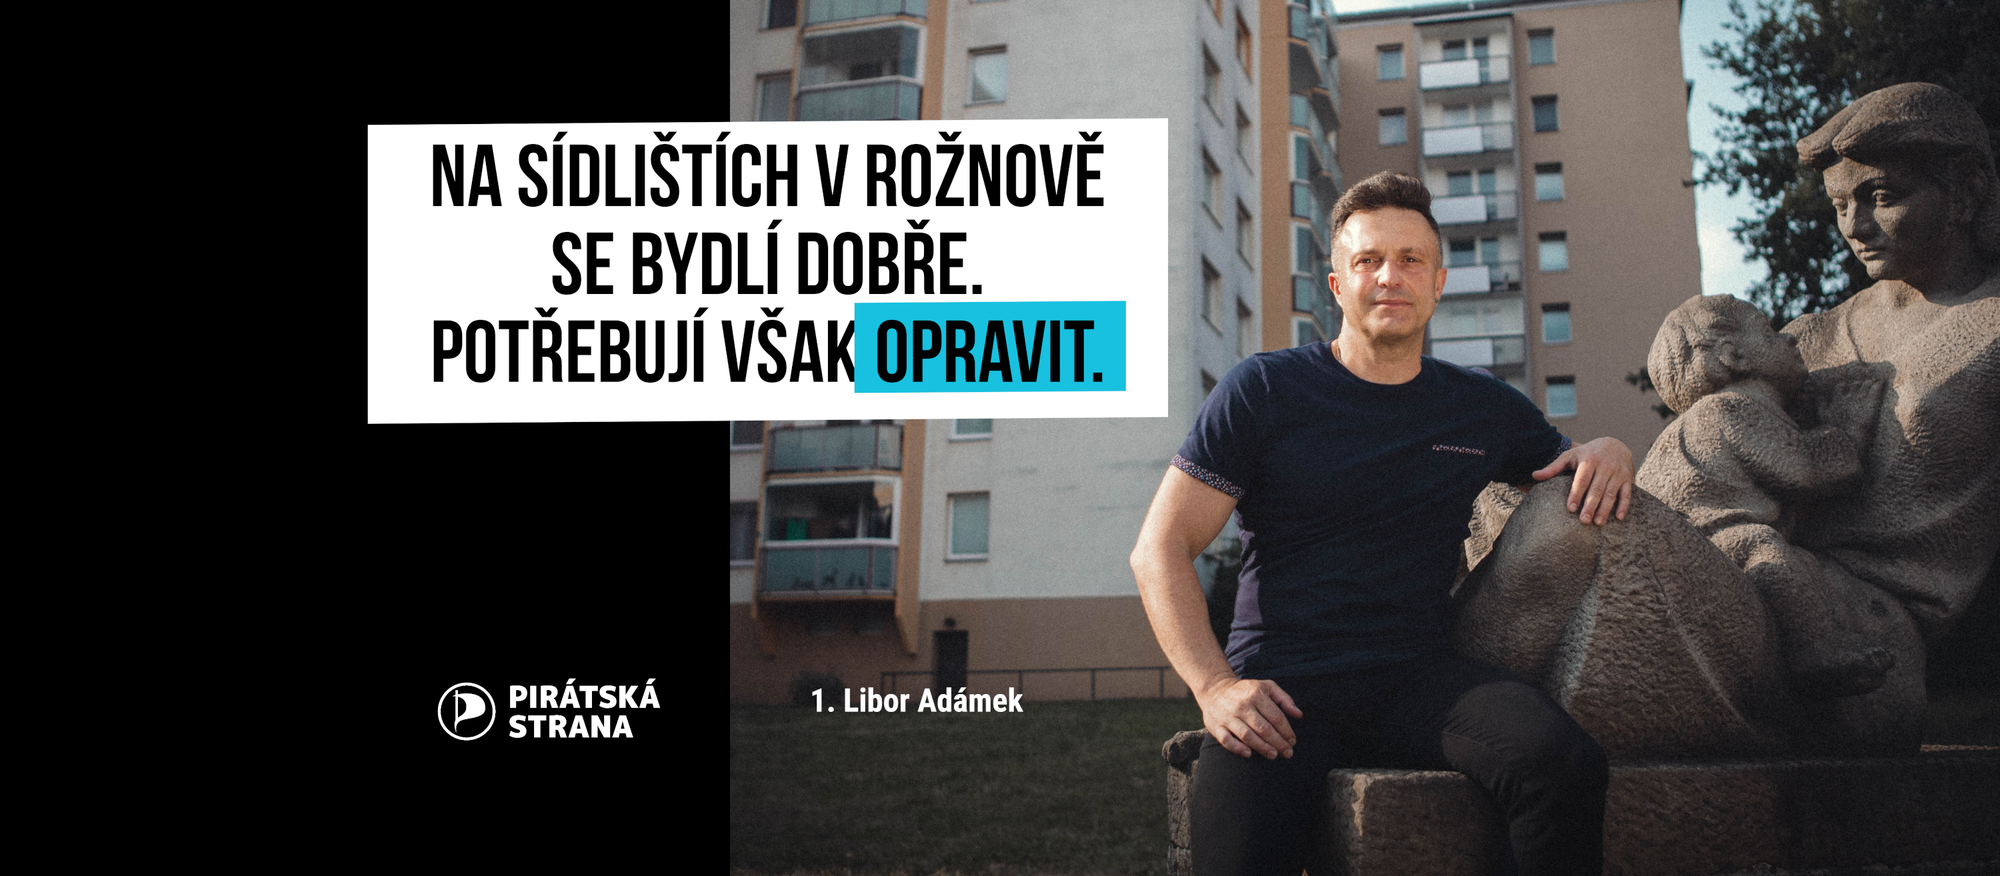 Libor Adámek: „Na sídlištích v Rožnově se bydlí dobře. Potřebují však opravit."